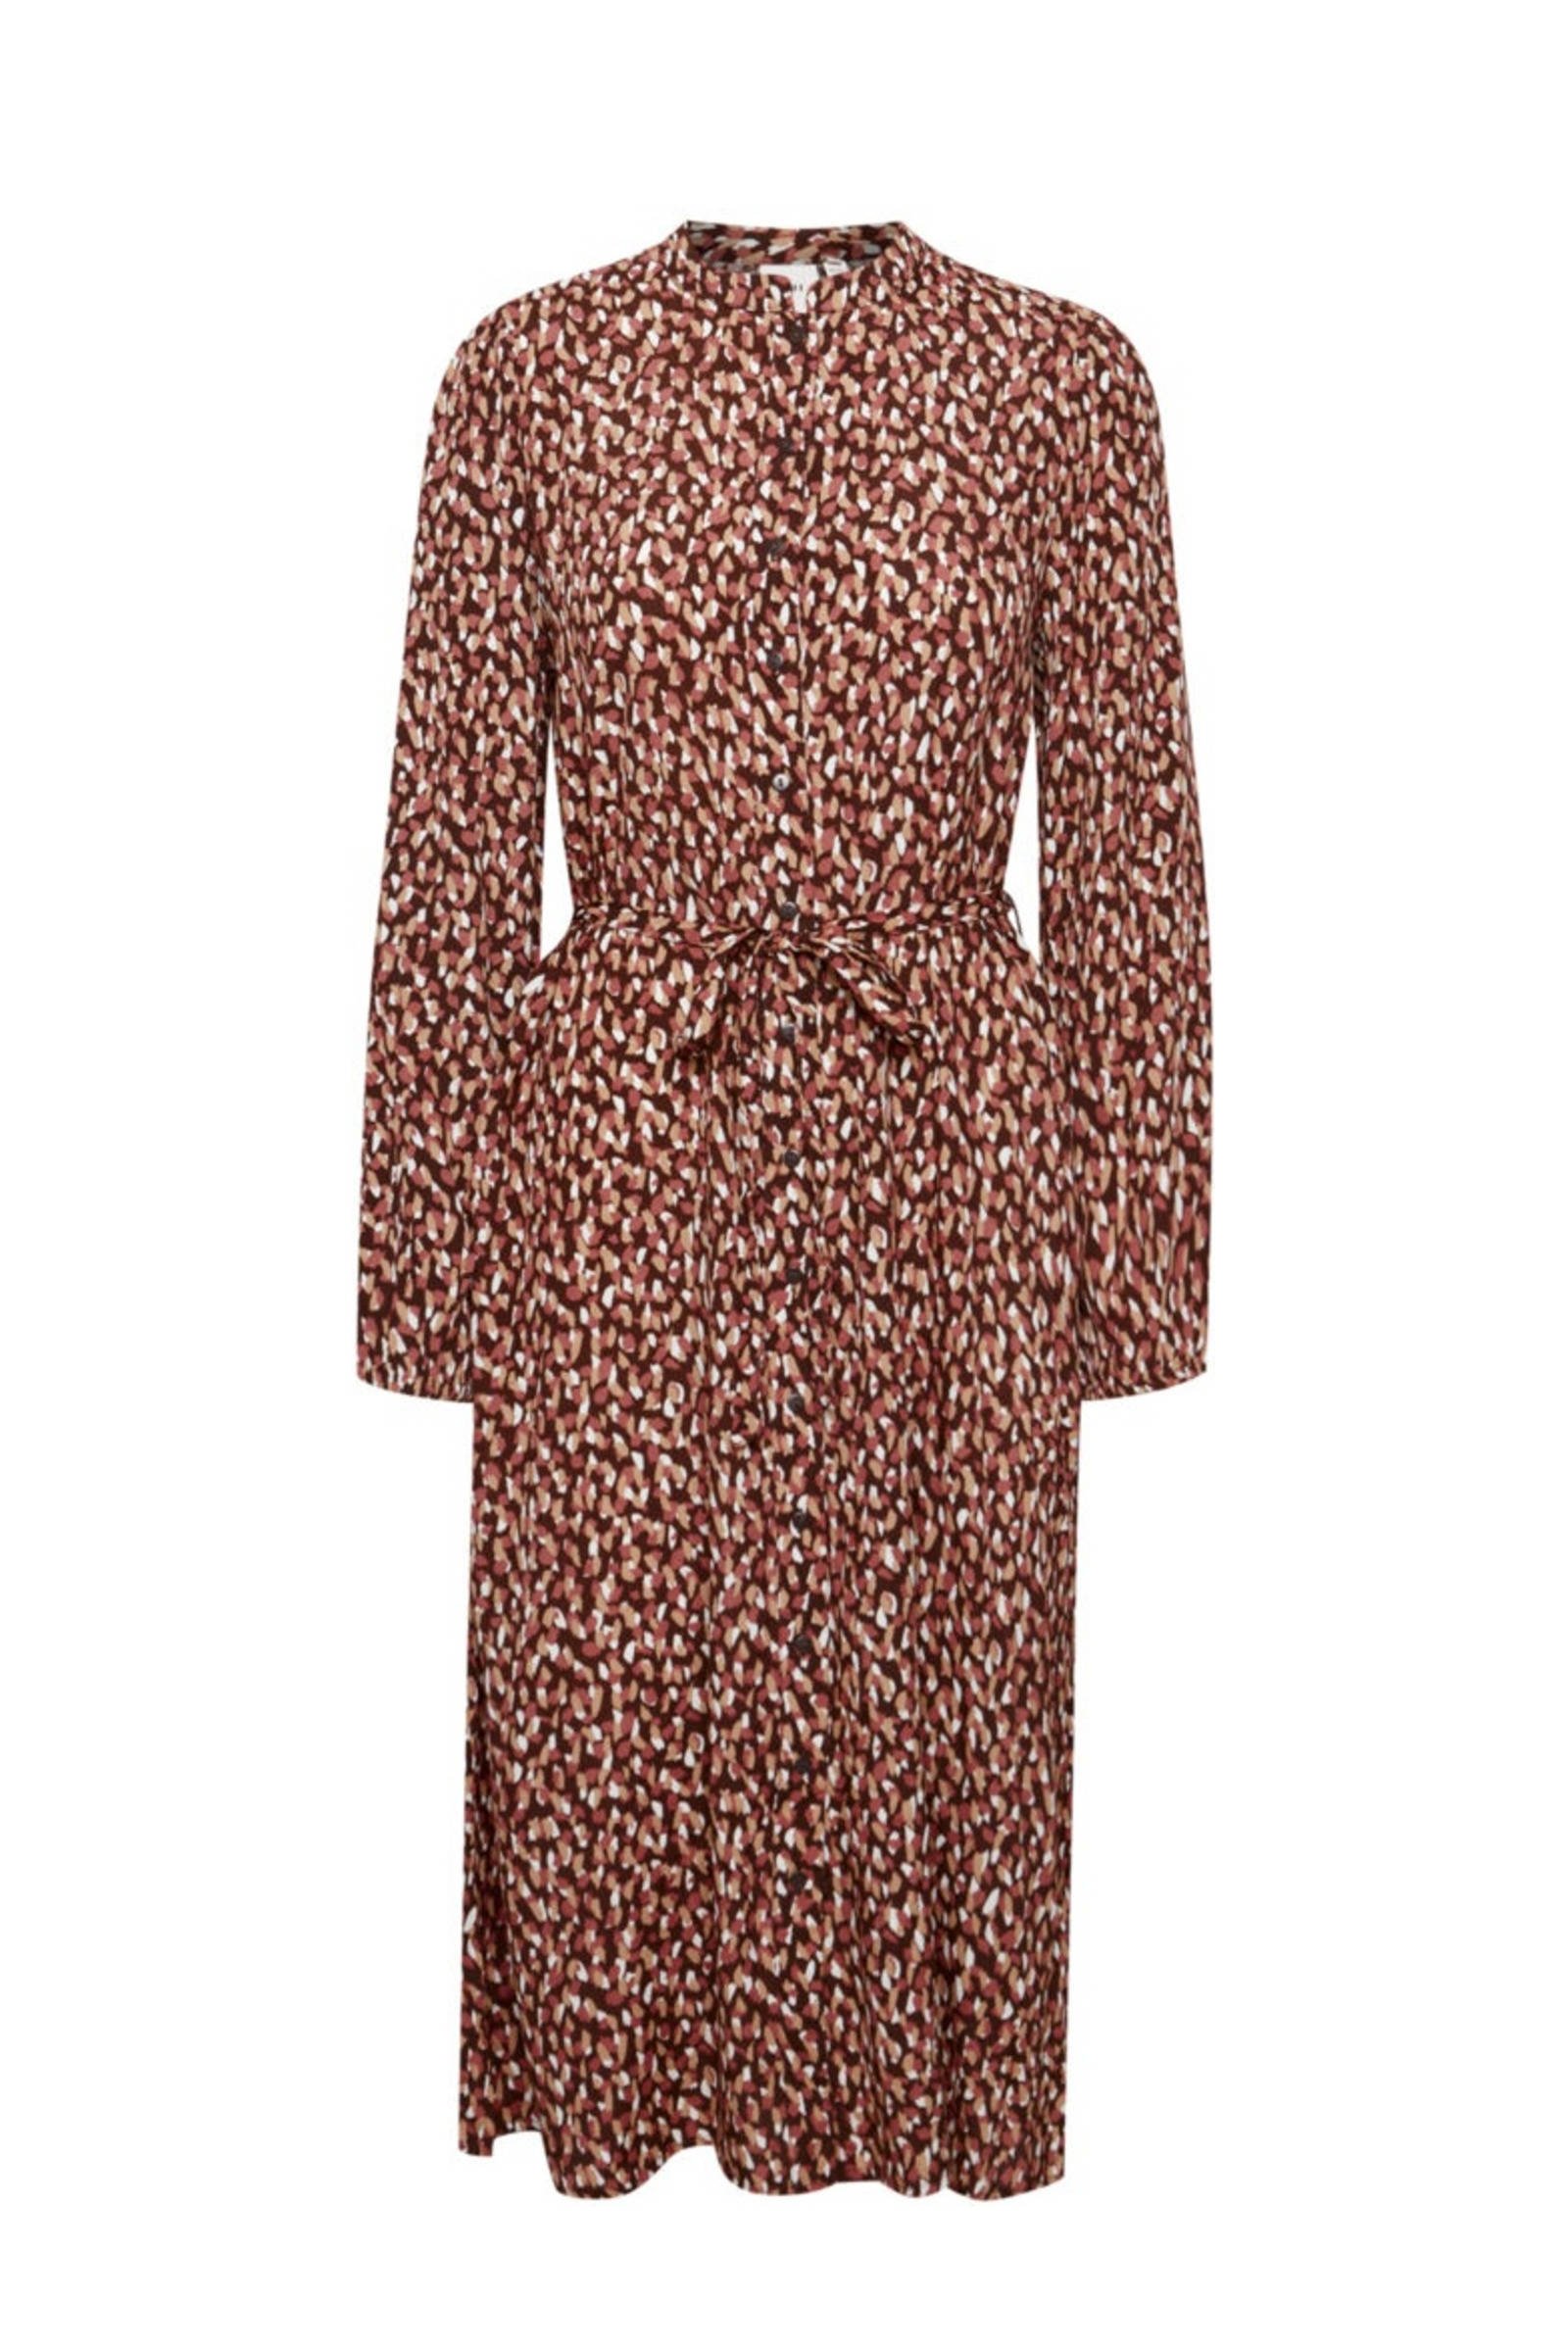 Ichi Tuniekjurk rood-bruin luipaardprint casual uitstraling Mode Jurken Tuniekjurken 